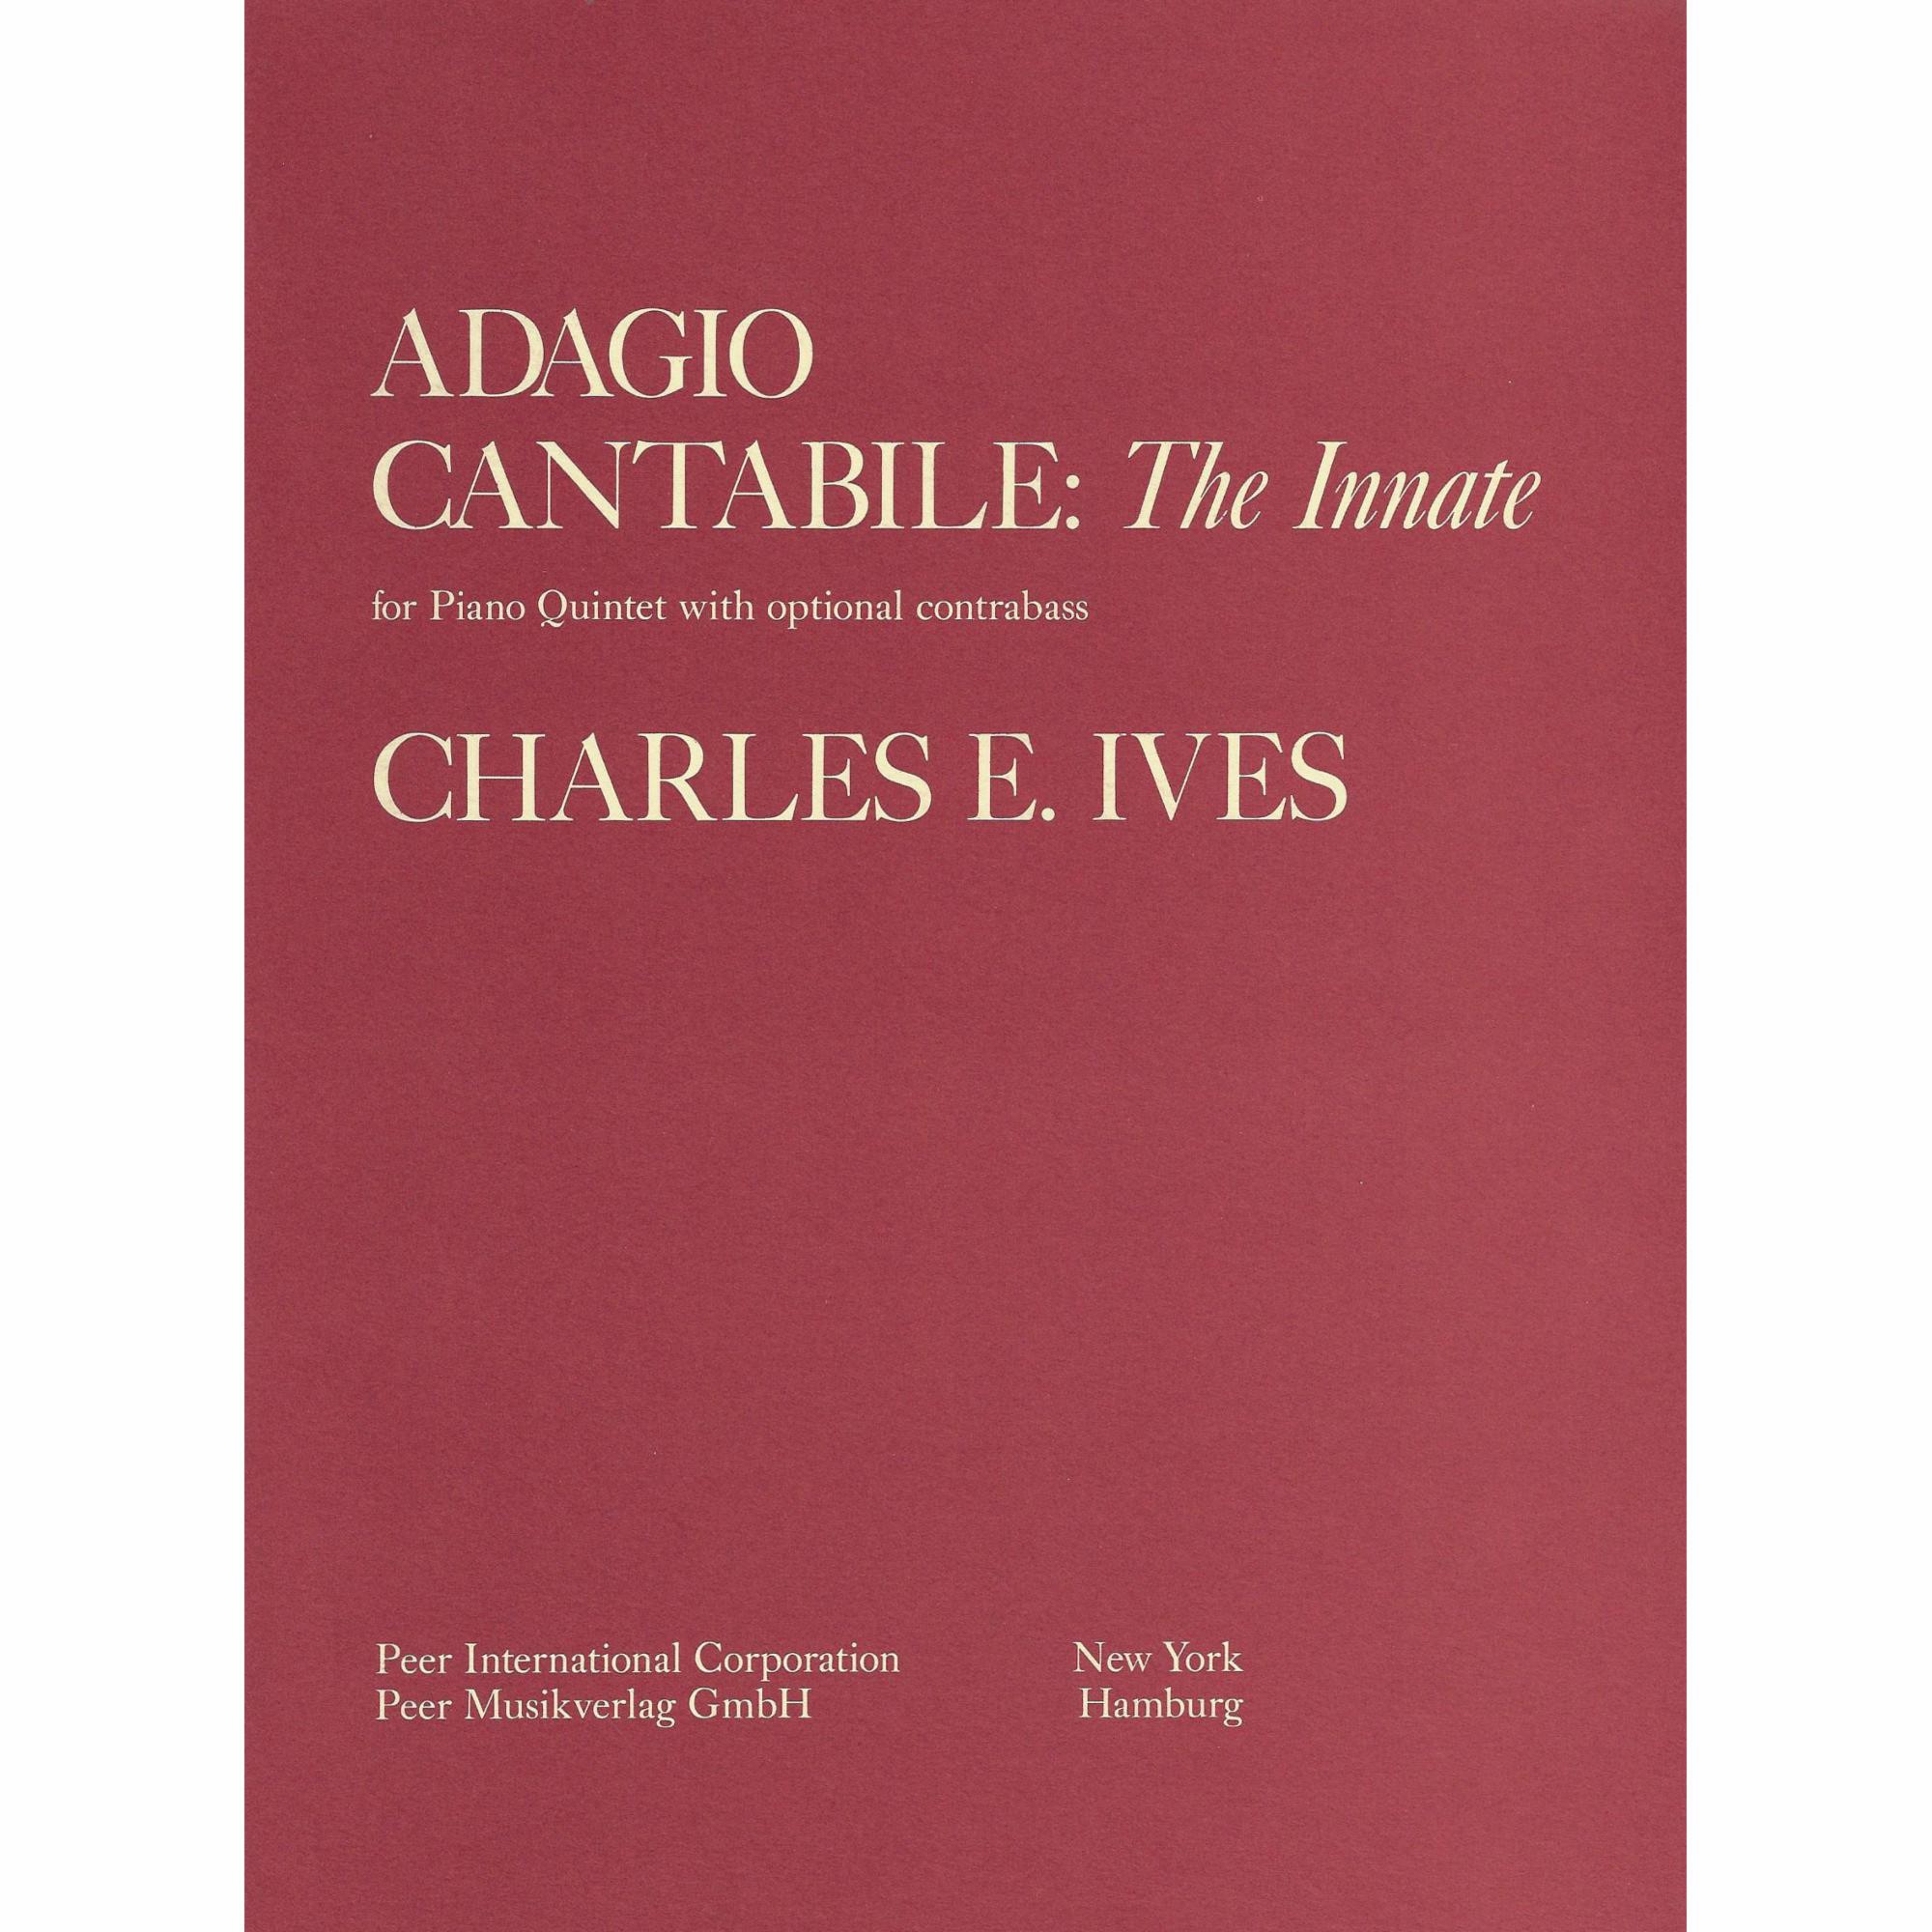 Ives -- Adagio Cantabile: The Innate for Piano Quintet